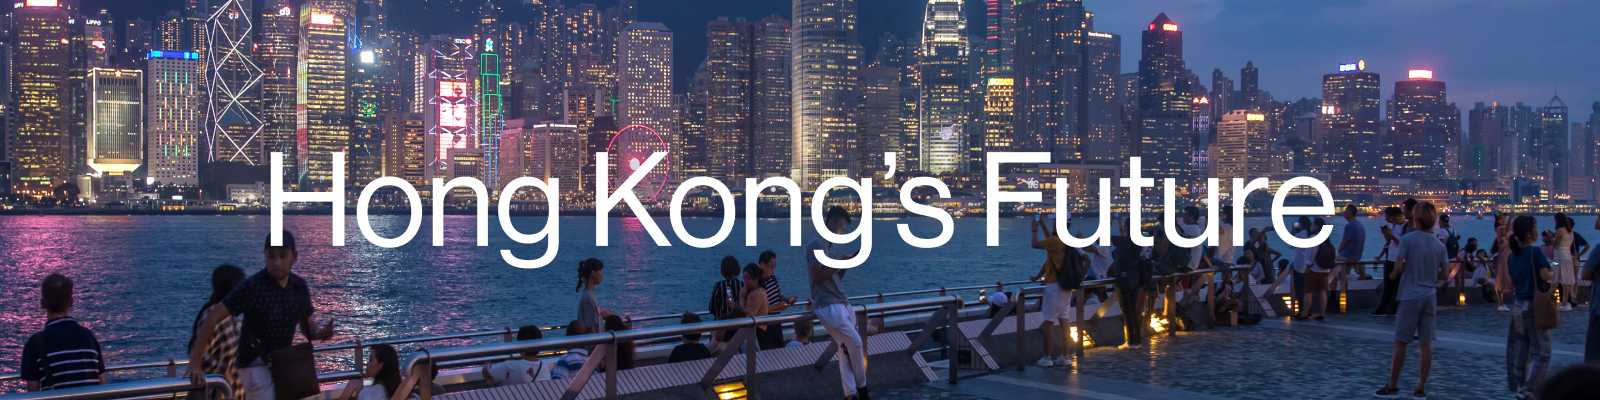 Hong Kong, Chine, Taïwan la restrictive Asie s'est (enfin) détendue ! -  The Travelers Club